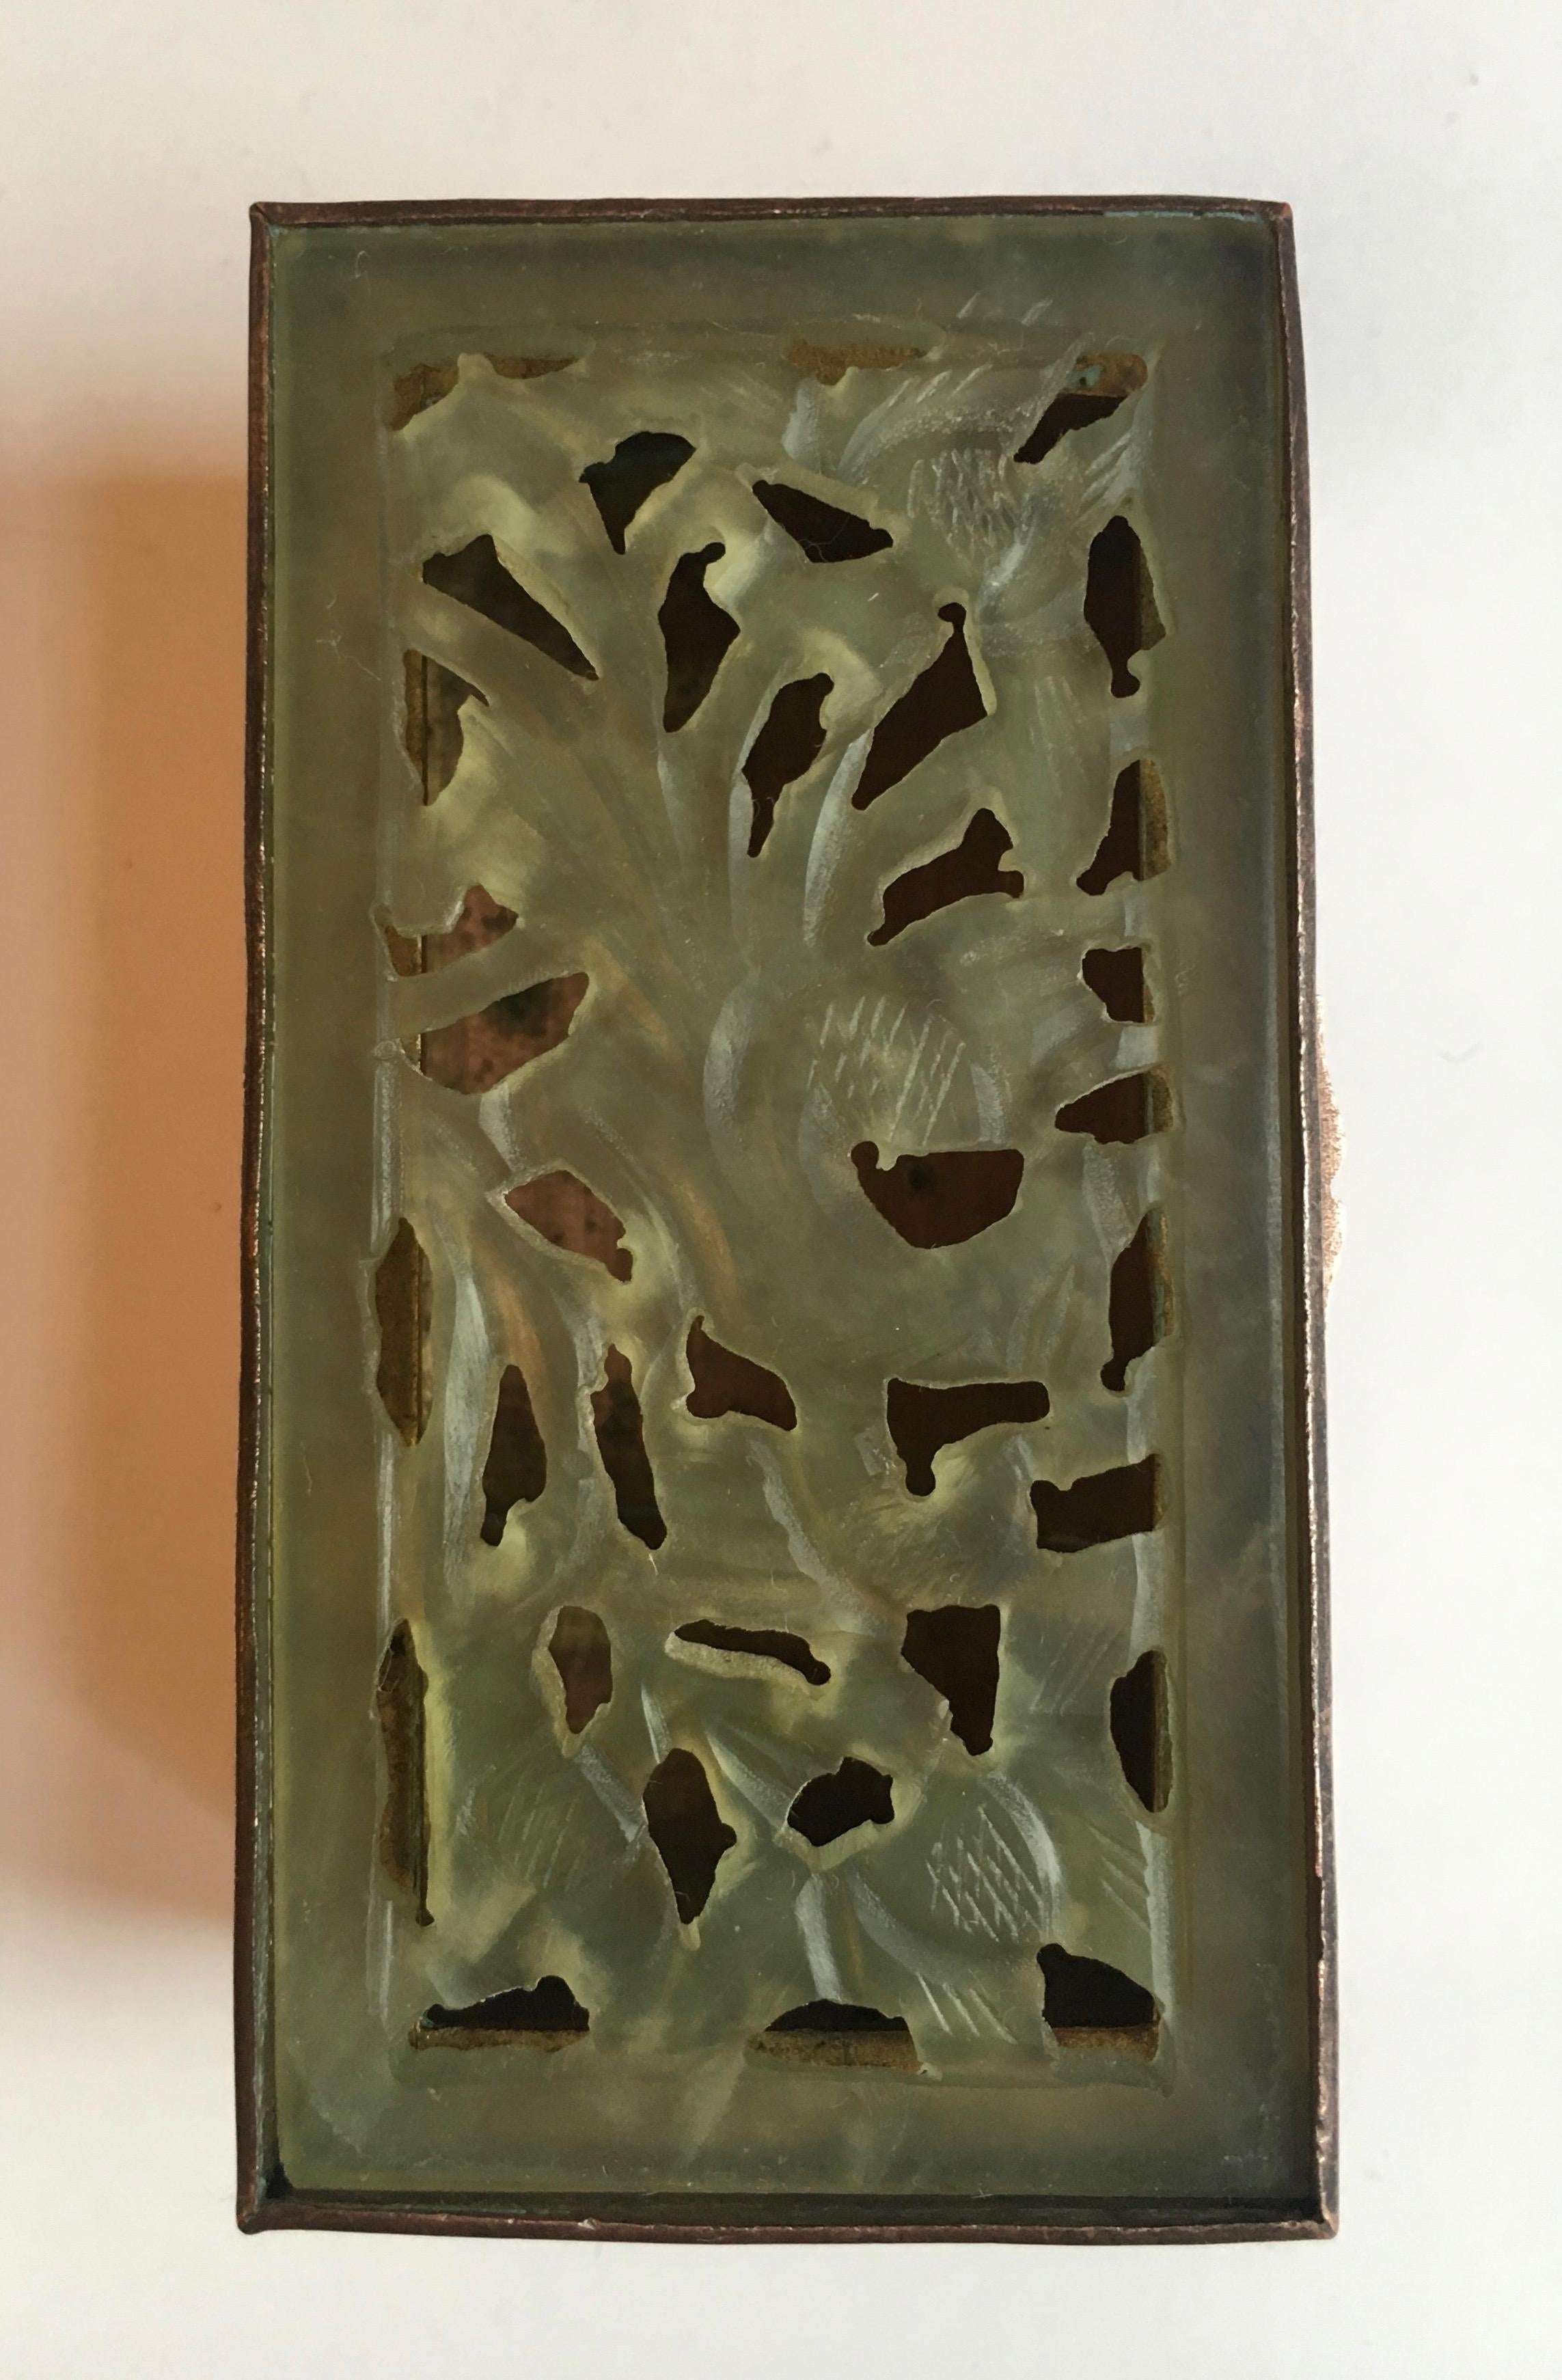 Kästchen aus Messing und geschnitzter Jade - geätzte Blätter auf einem Messingkästchen mit einem Scharnierdeckel mit geschnitzten Jadeblumen - ein hübsches Schmuckstück oder Wechselgeldkästchen für den Waschtisch oder die Kommode. Kann auch kreativ